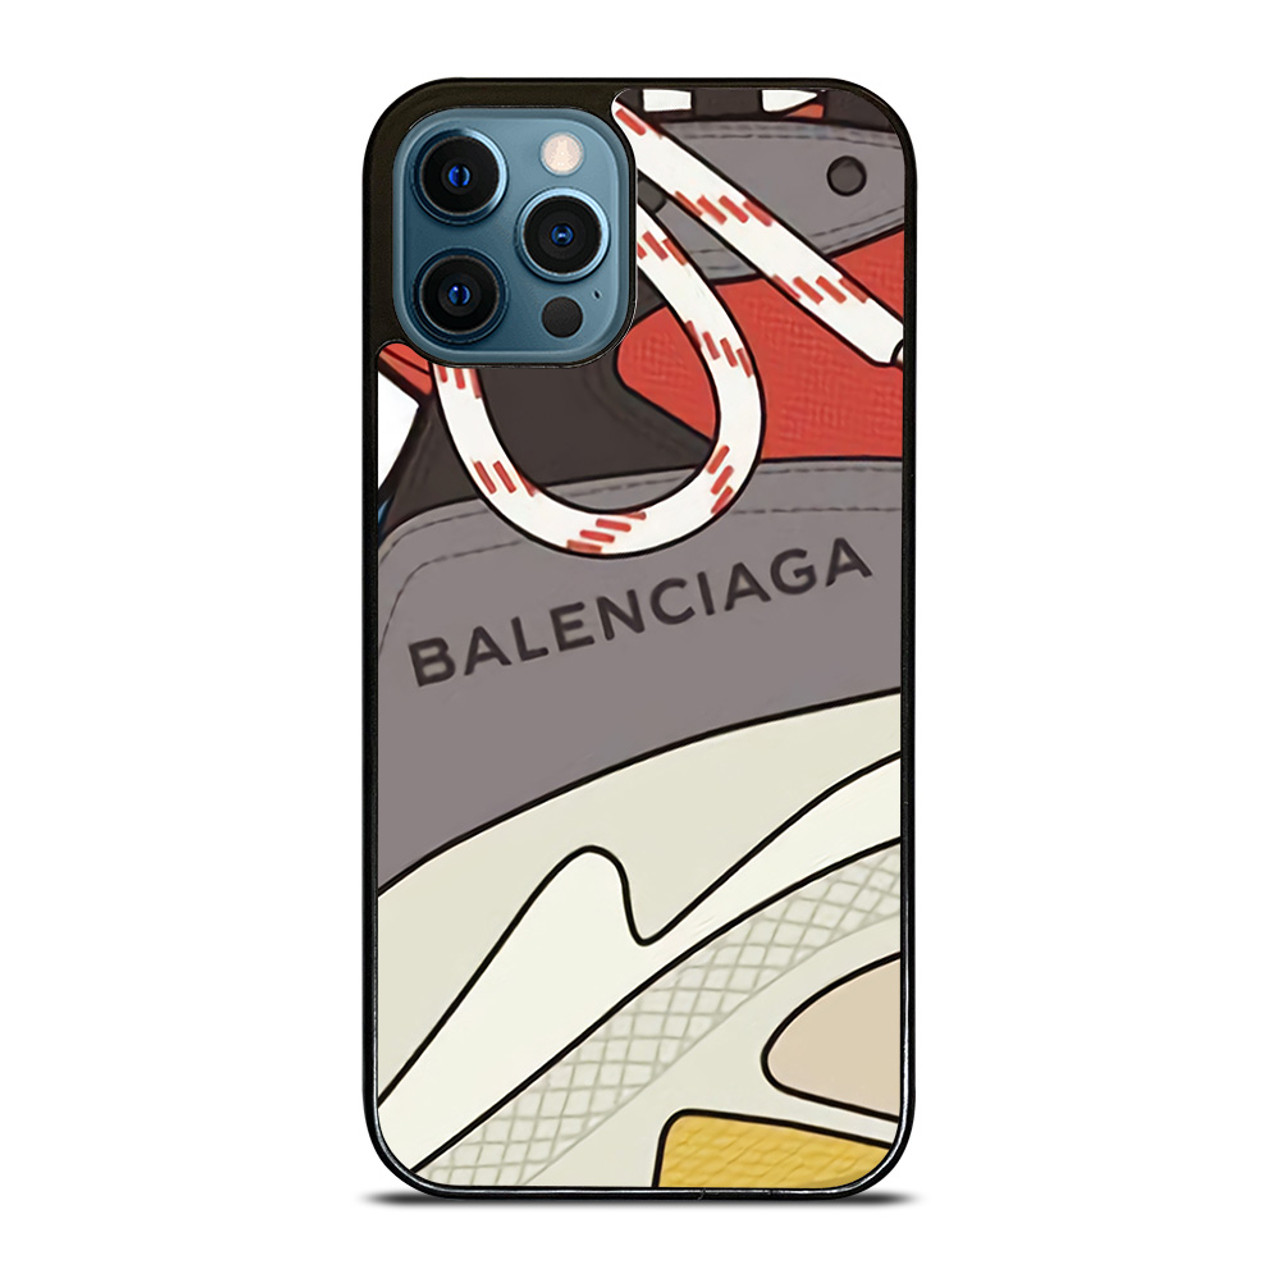 Sta in plaats daarvan op Ambtenaren verhoging BALENCIAGA SHOES LOGO iPhone 12 Pro Max Case Cover